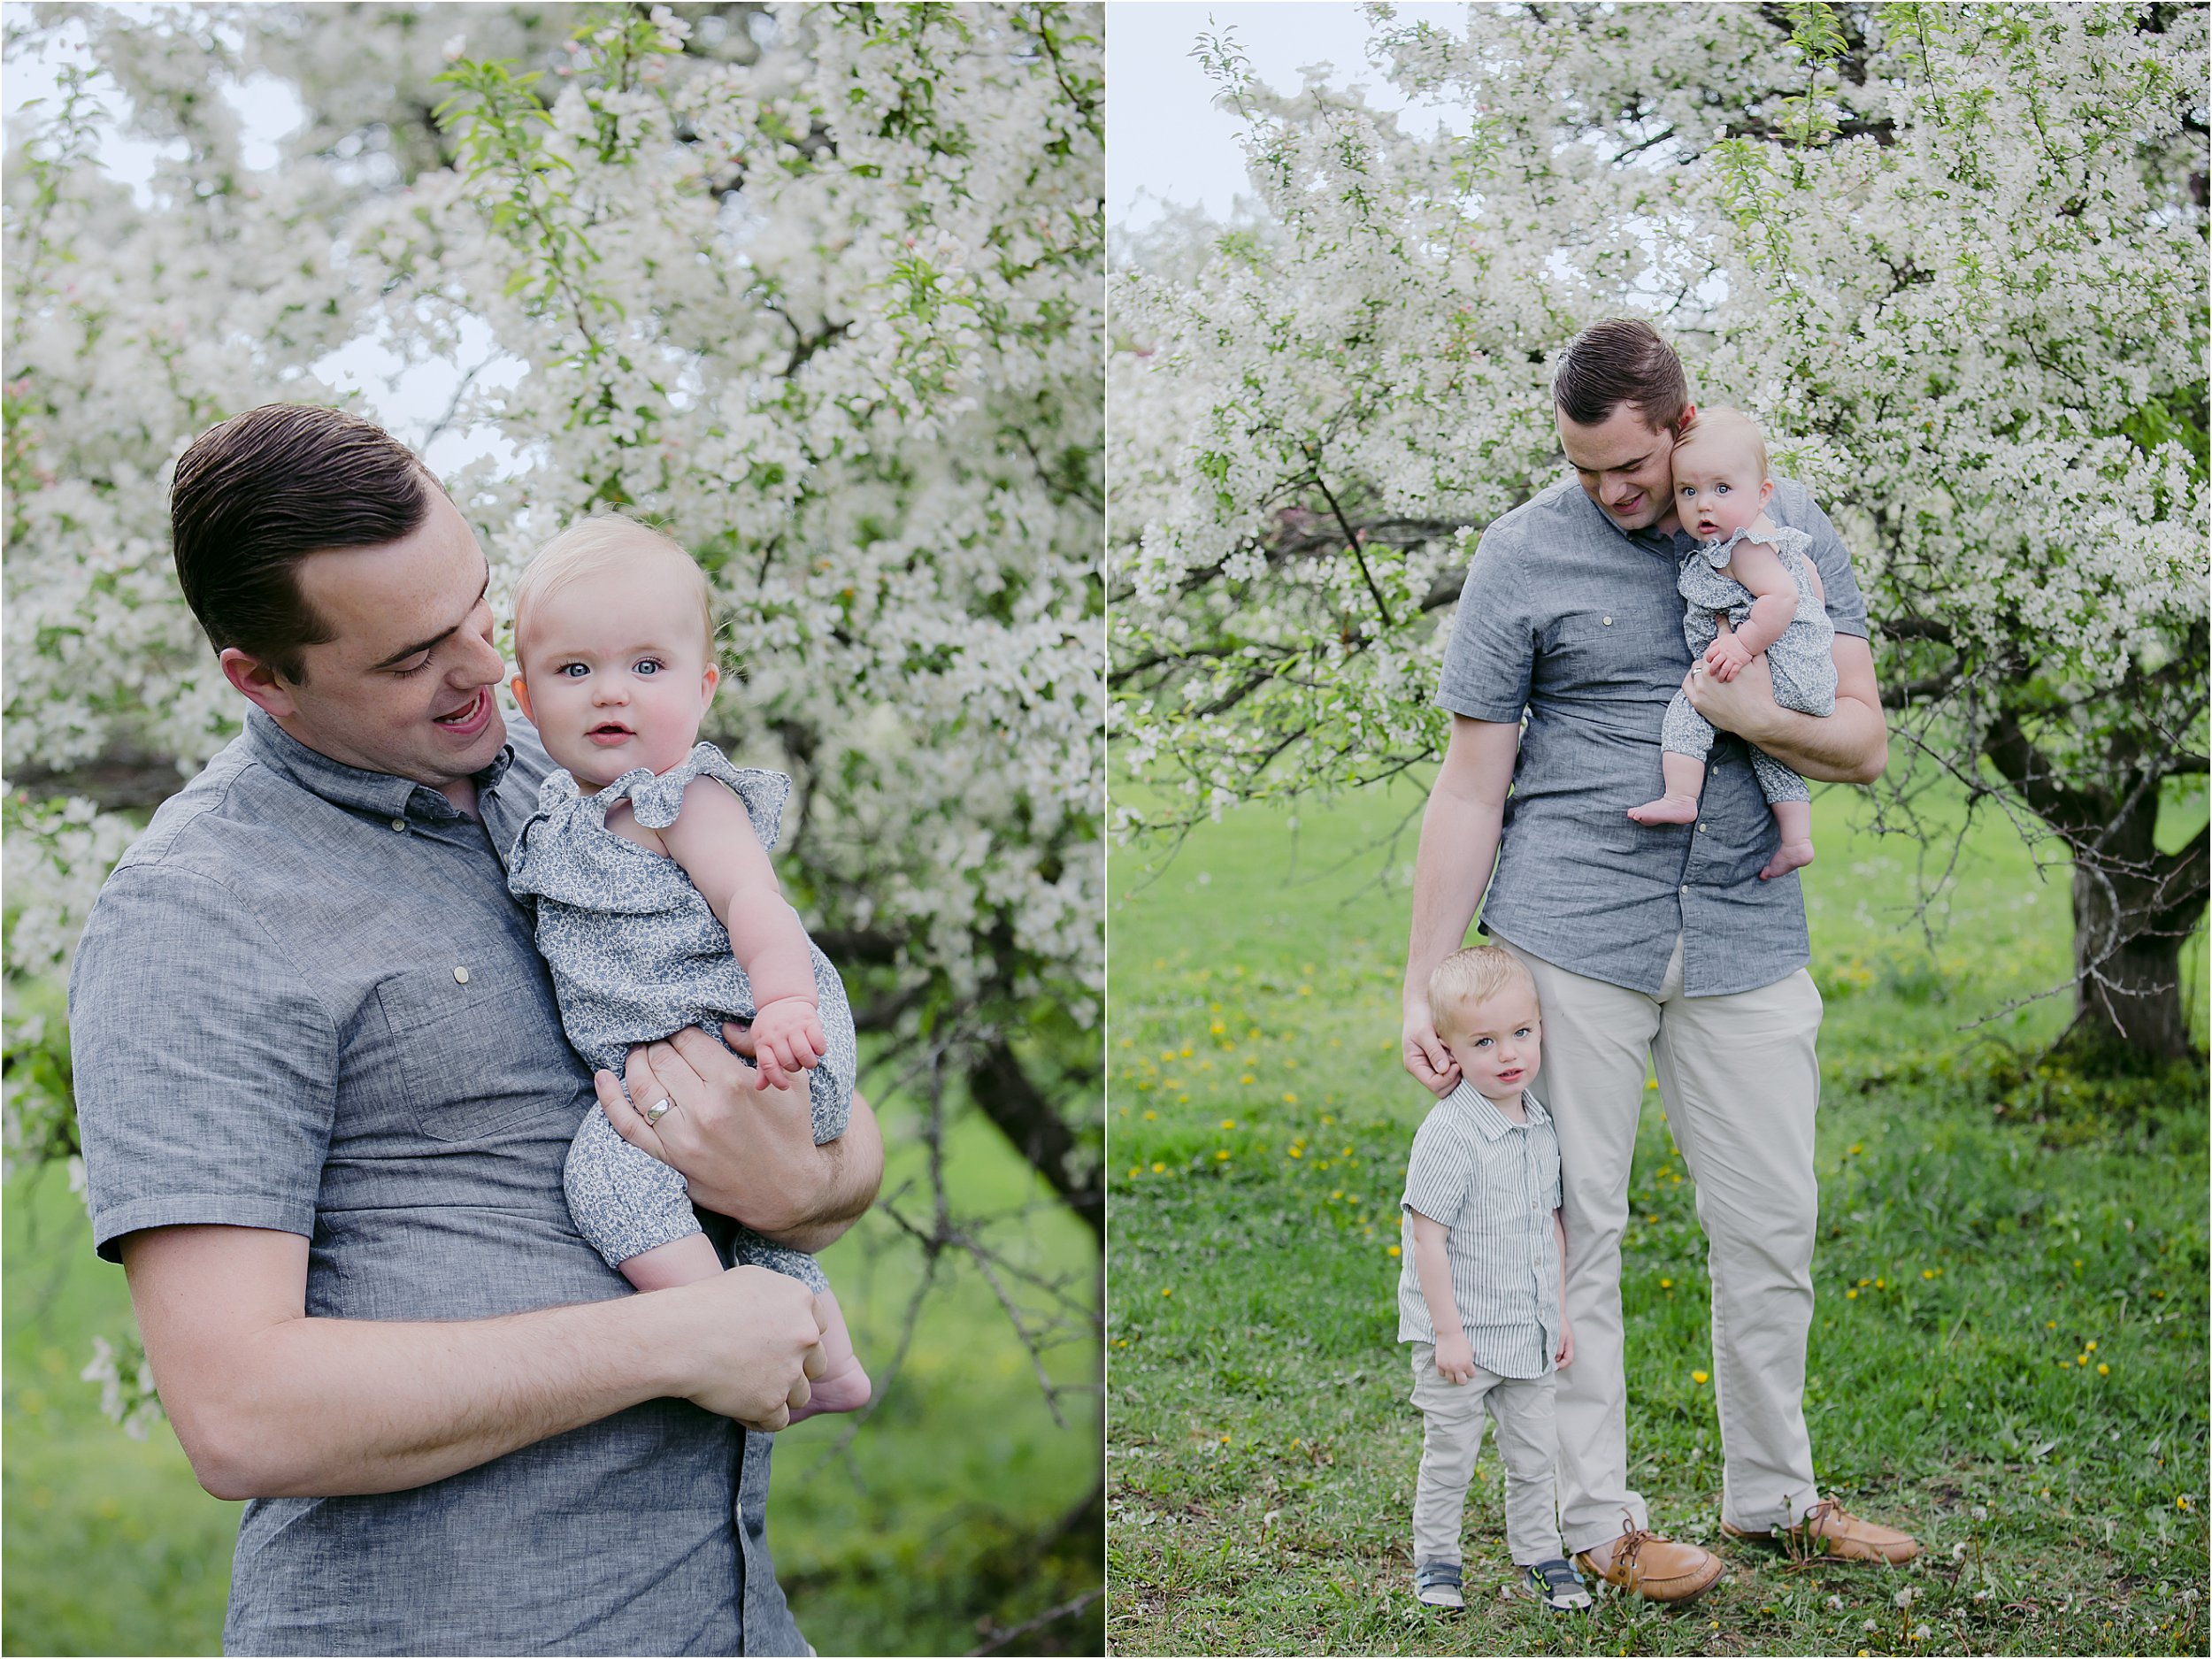 04-white-flowering-trees-dad-children.JPG